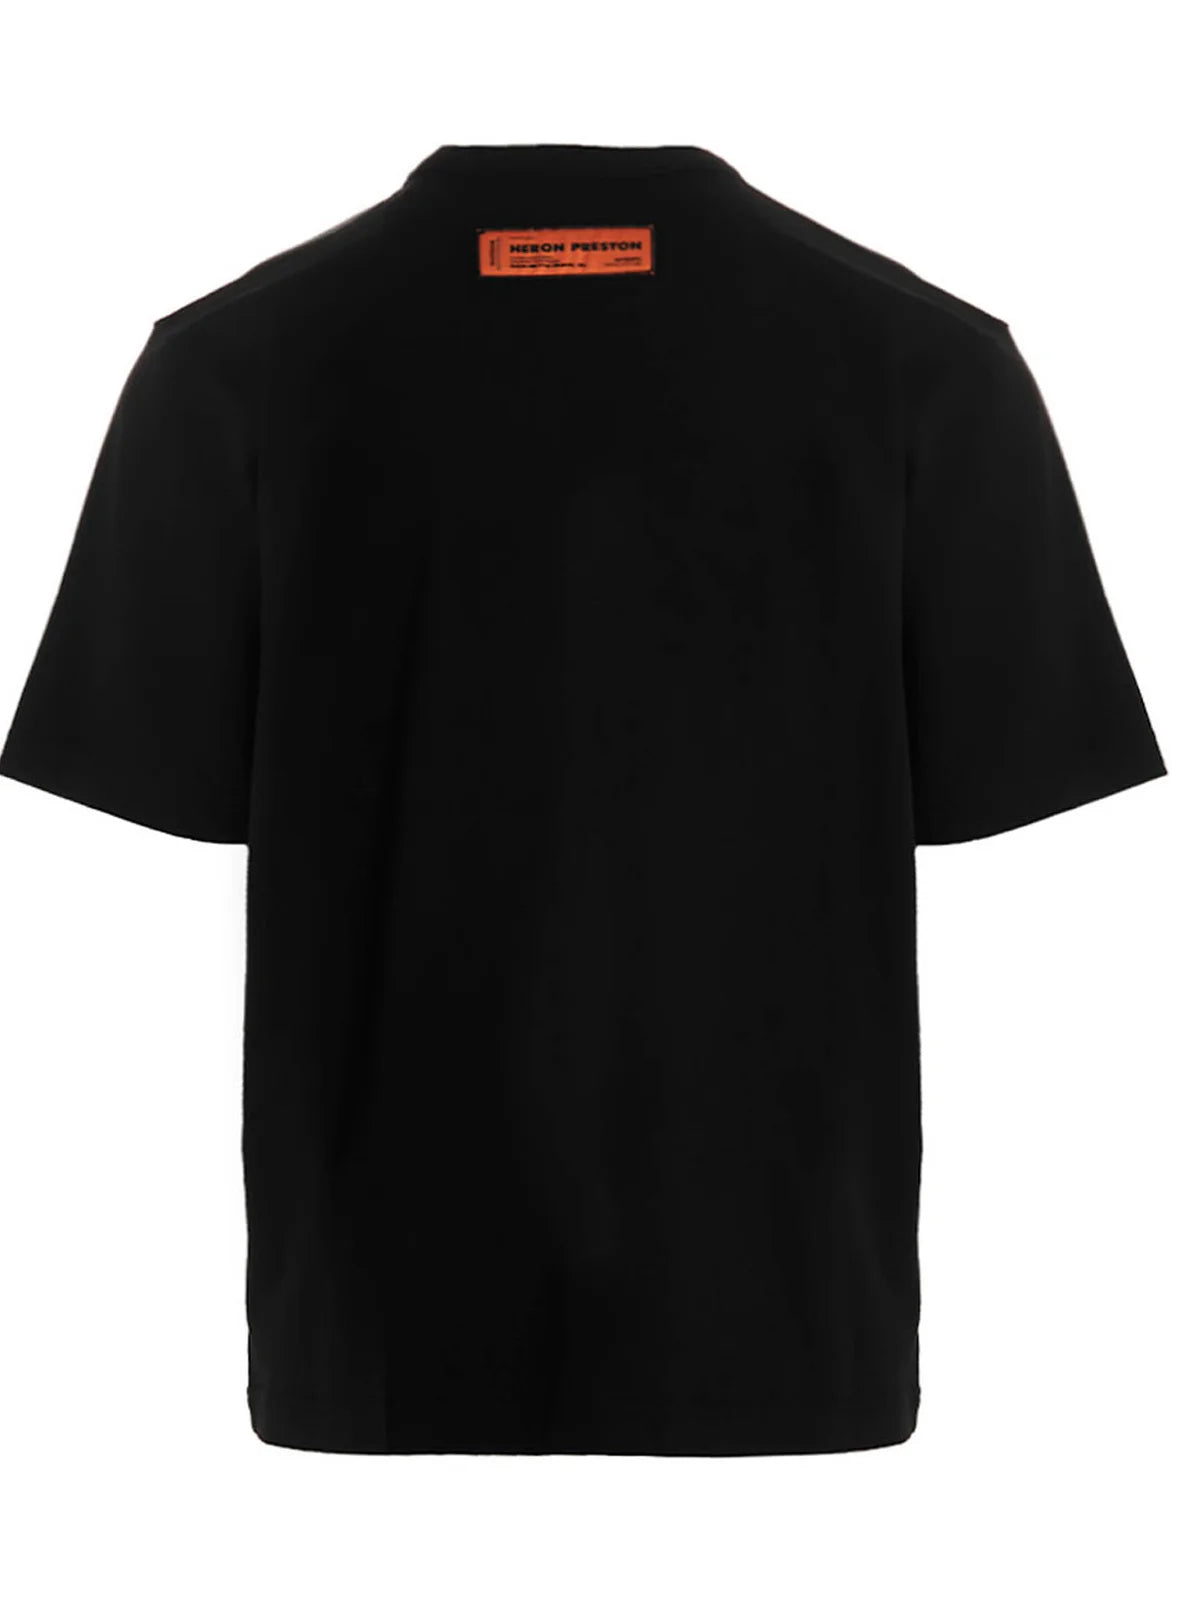 Heron Preston Misprinted Heron T-Shirt in Black